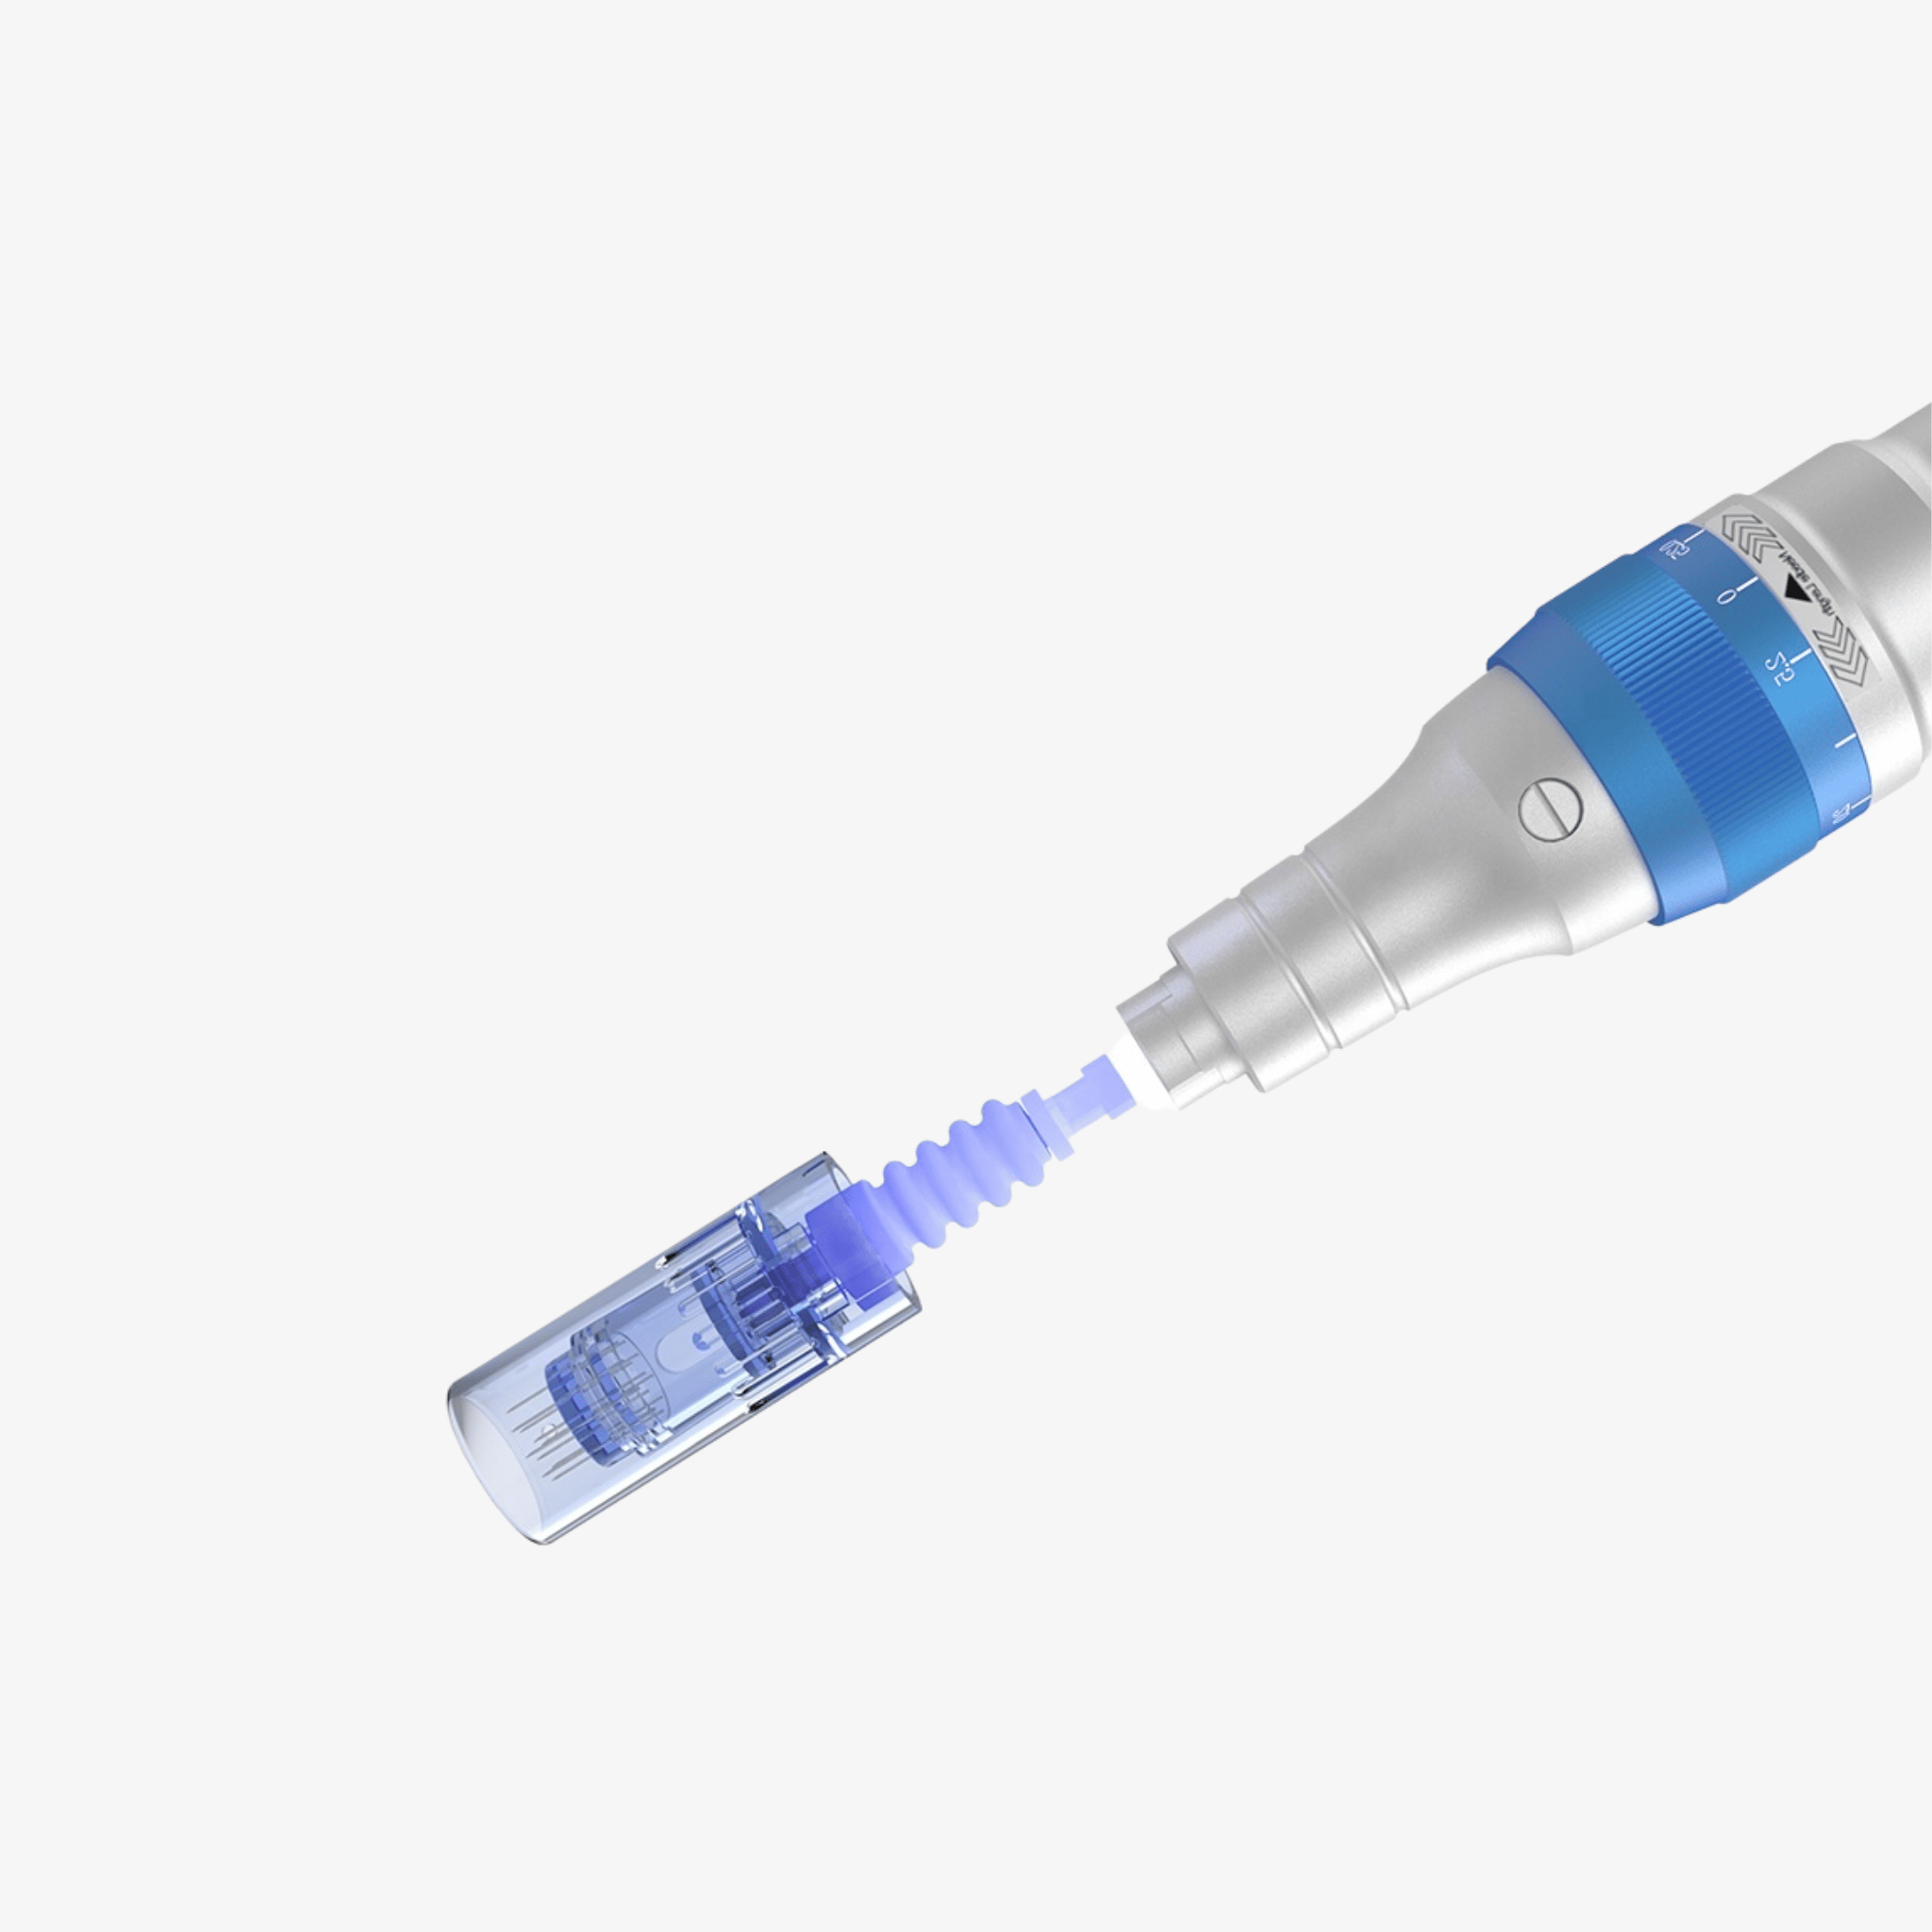 cartridge with dr pen a6 derma pen